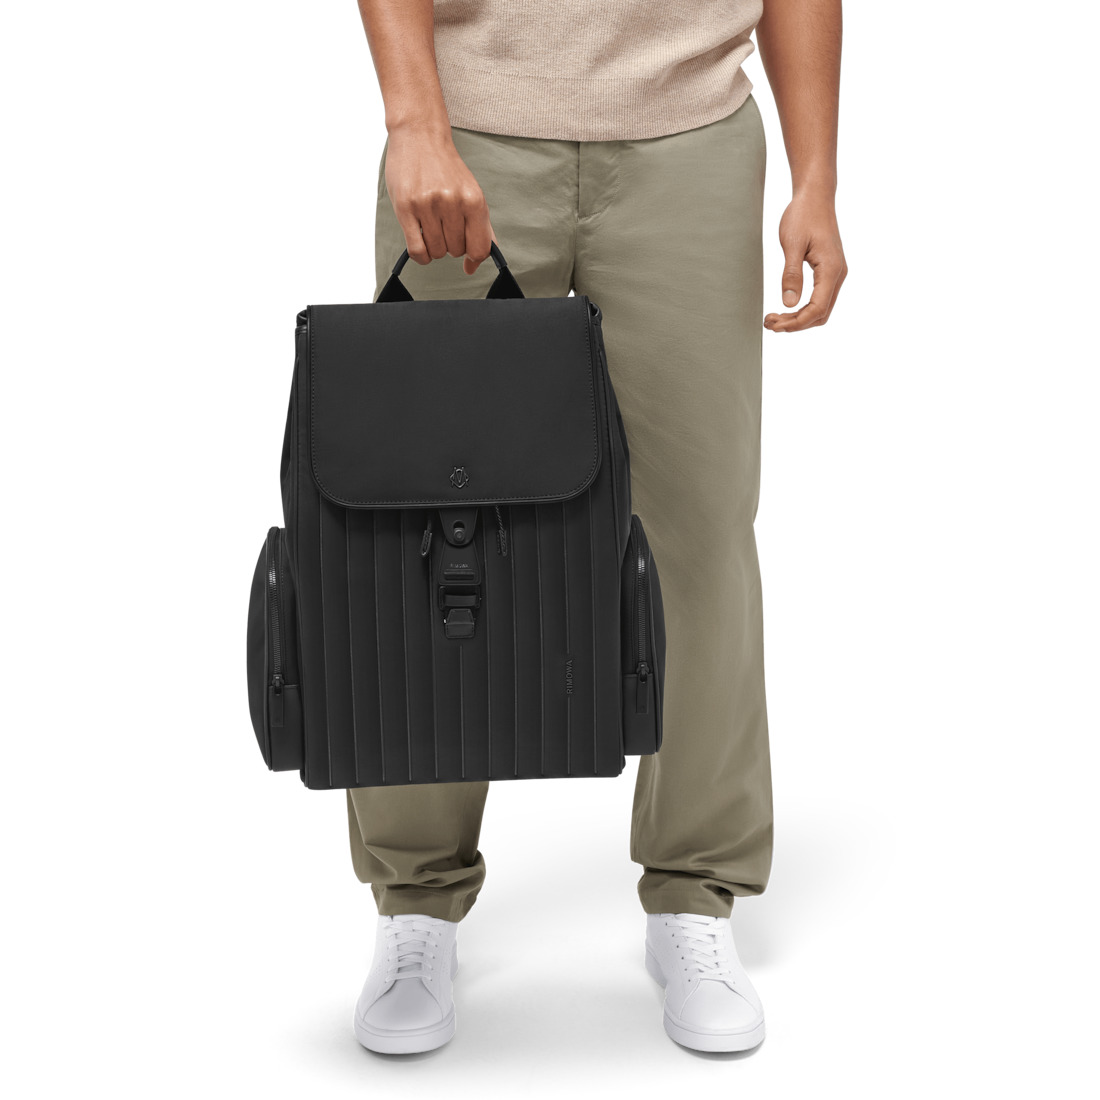 Never Still - Nylon Flap Backpack Large - 6